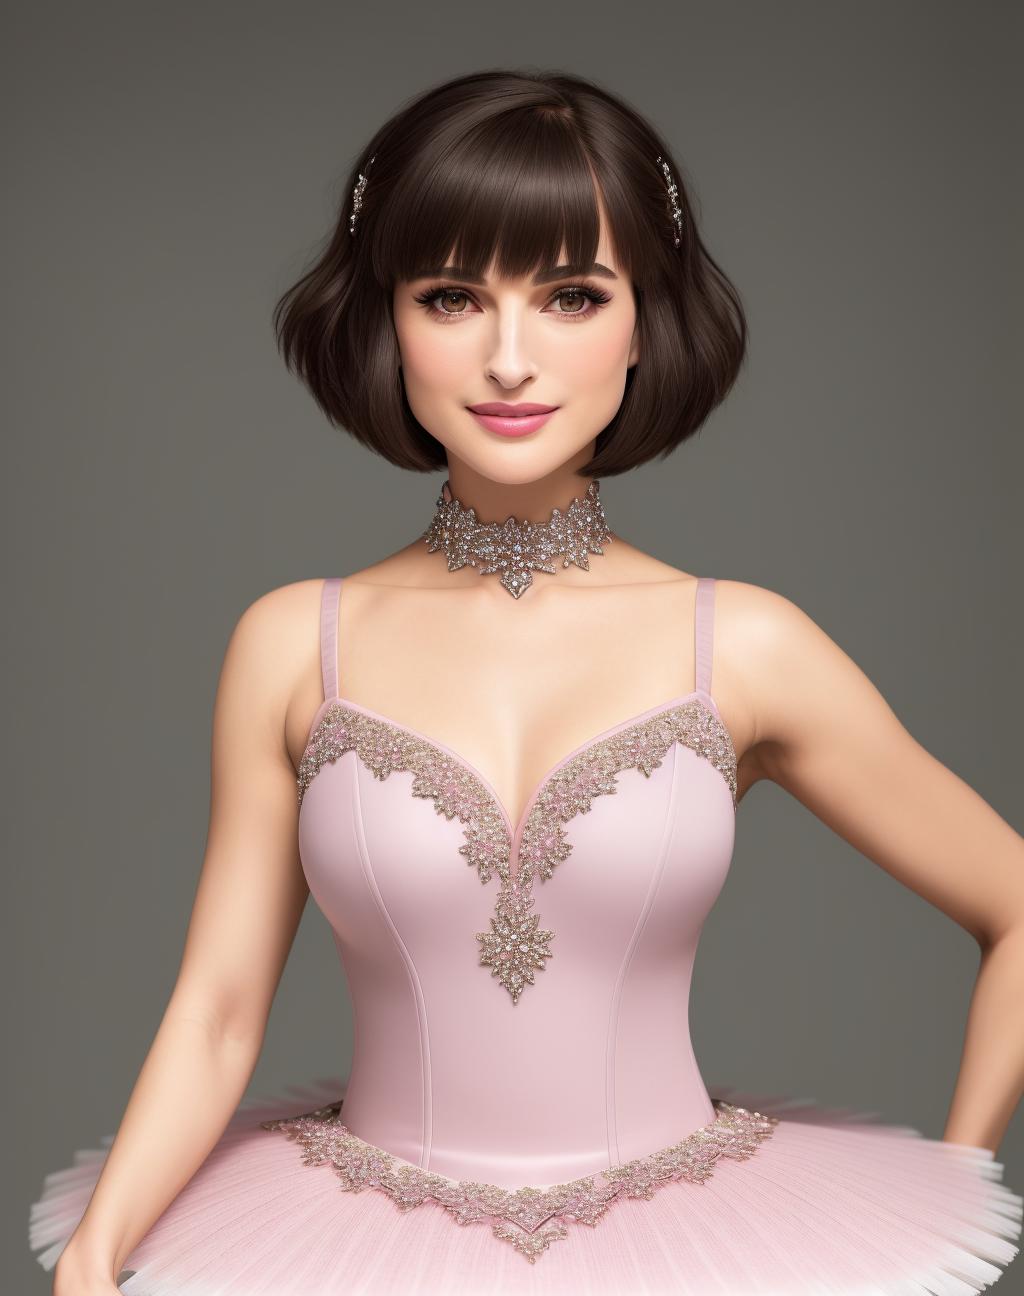 Haute Couture | Prima Ballerina image by EDG